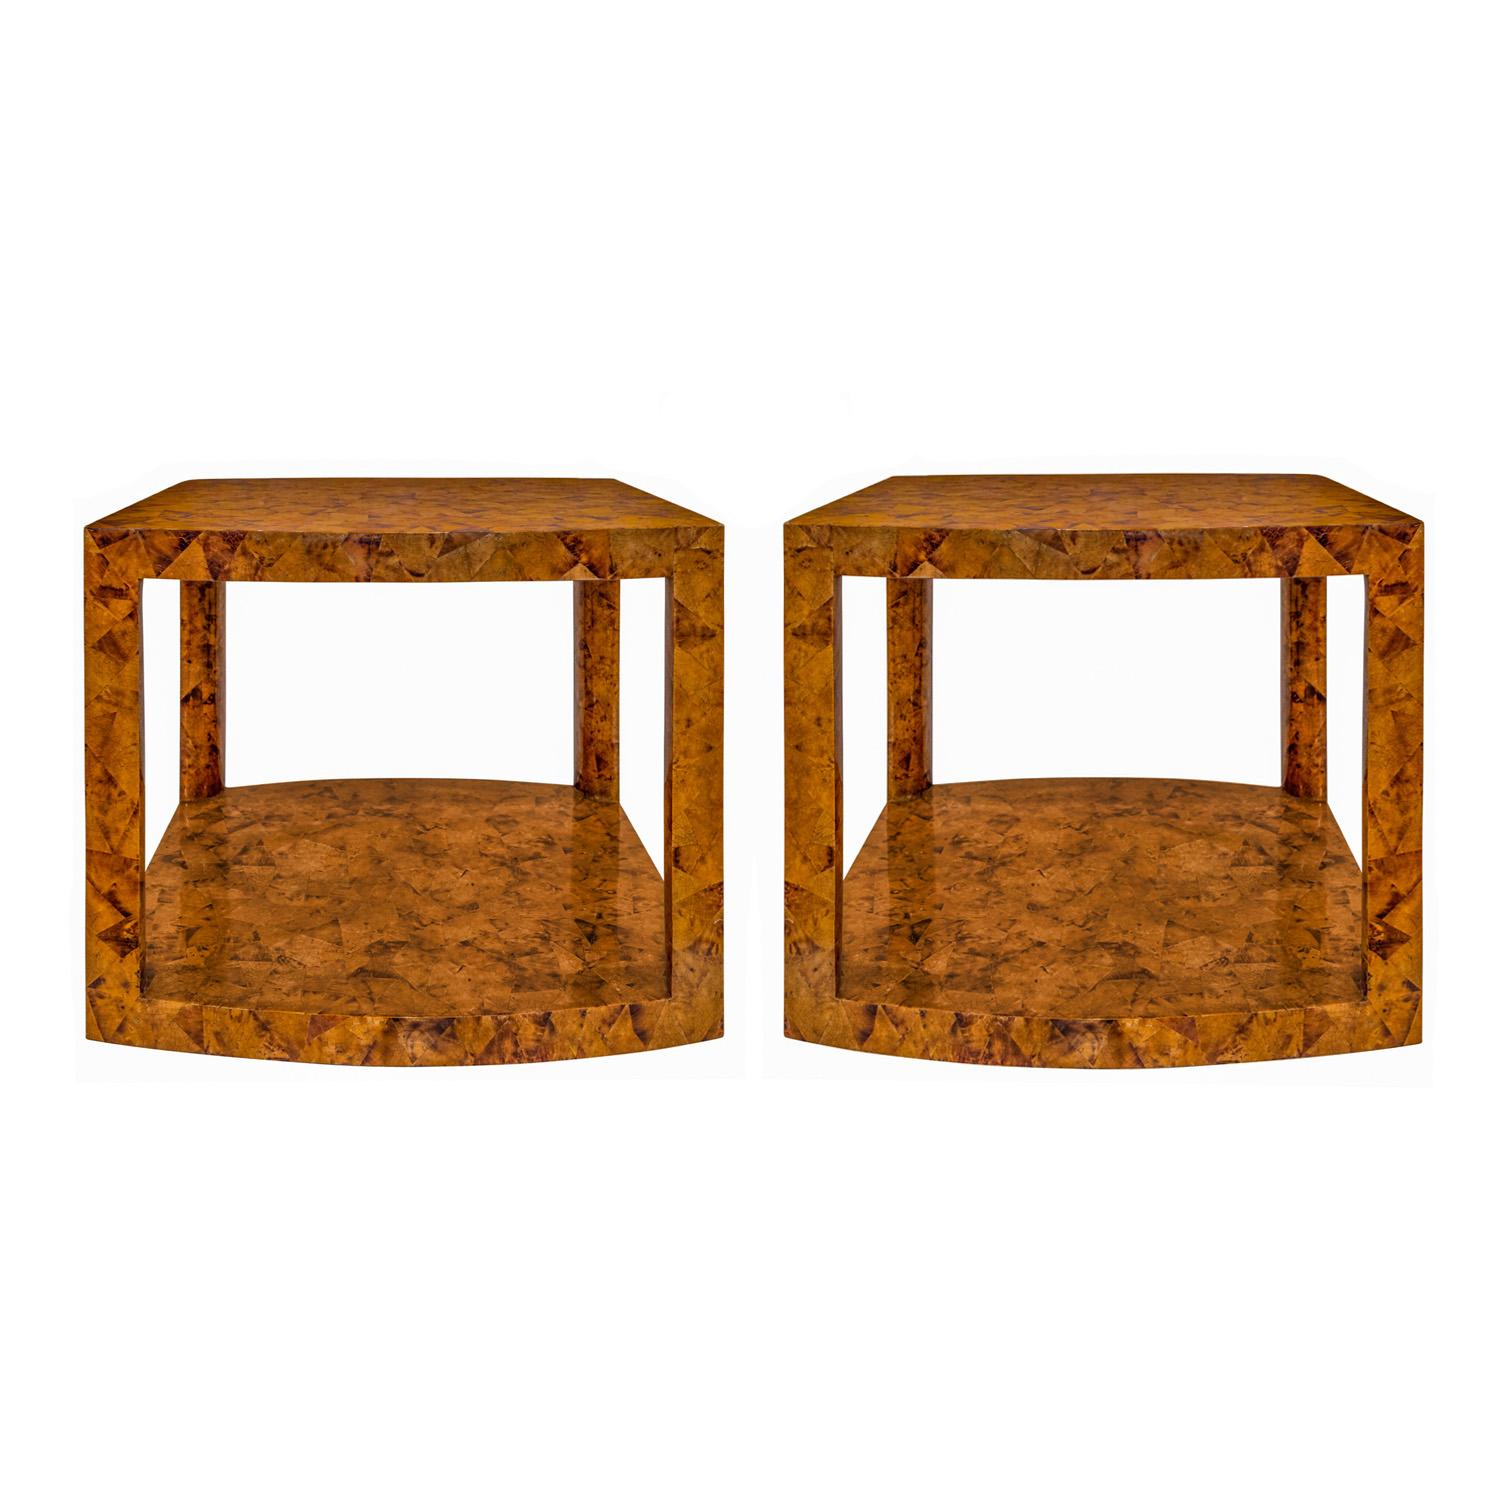 Exceptionnelle paire de grandes tables d'appoint à deux niveaux, aux extrémités incurvées, en penshell tesselé, par Karl Springer, américain, années 1980 (montrées avec l'étiquette originale de Karl Springer sur le dessous).  La qualité de